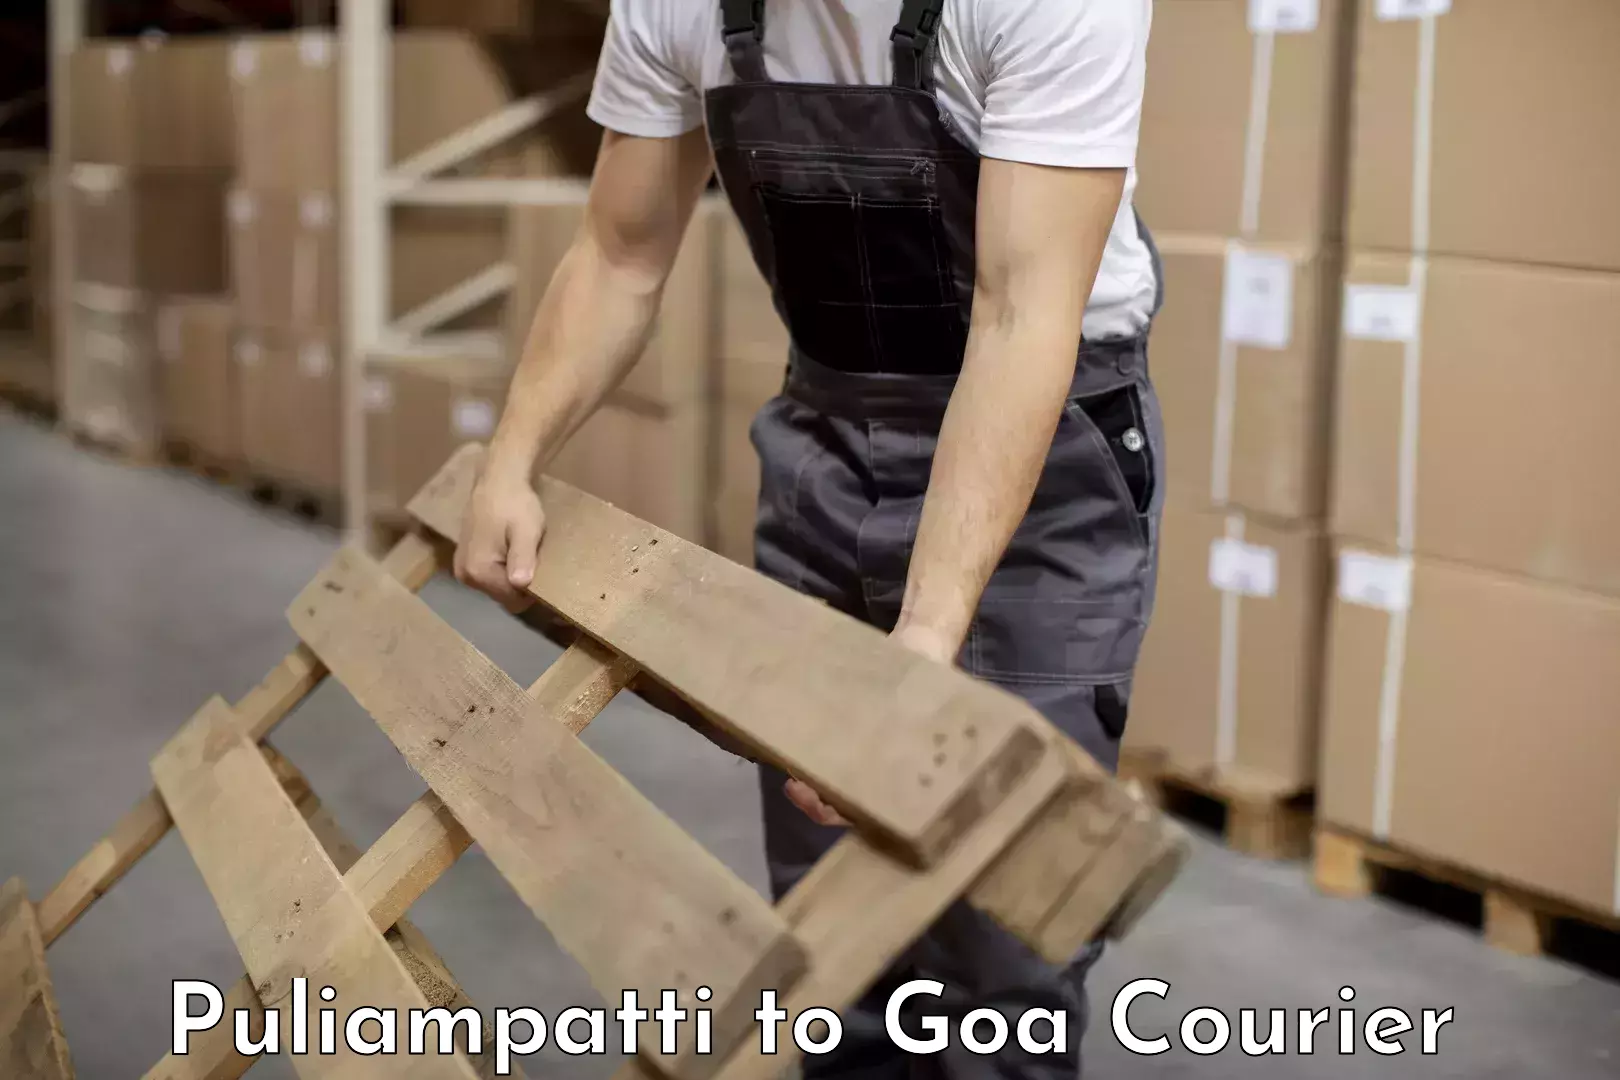 Furniture delivery service Puliampatti to Goa